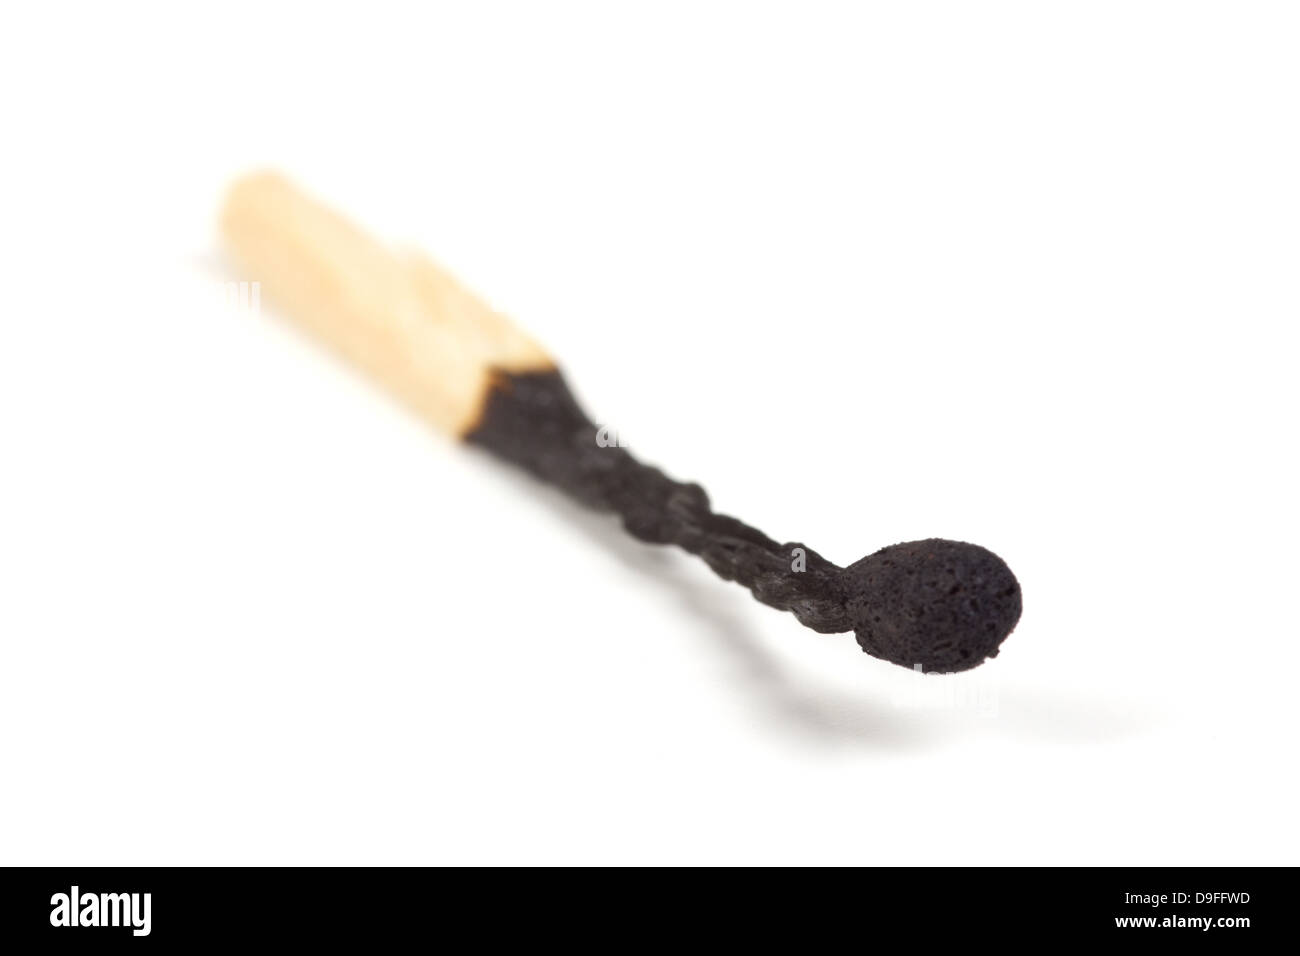 Ein abgebranntes Streichholz |A burnt match| Stock Photo